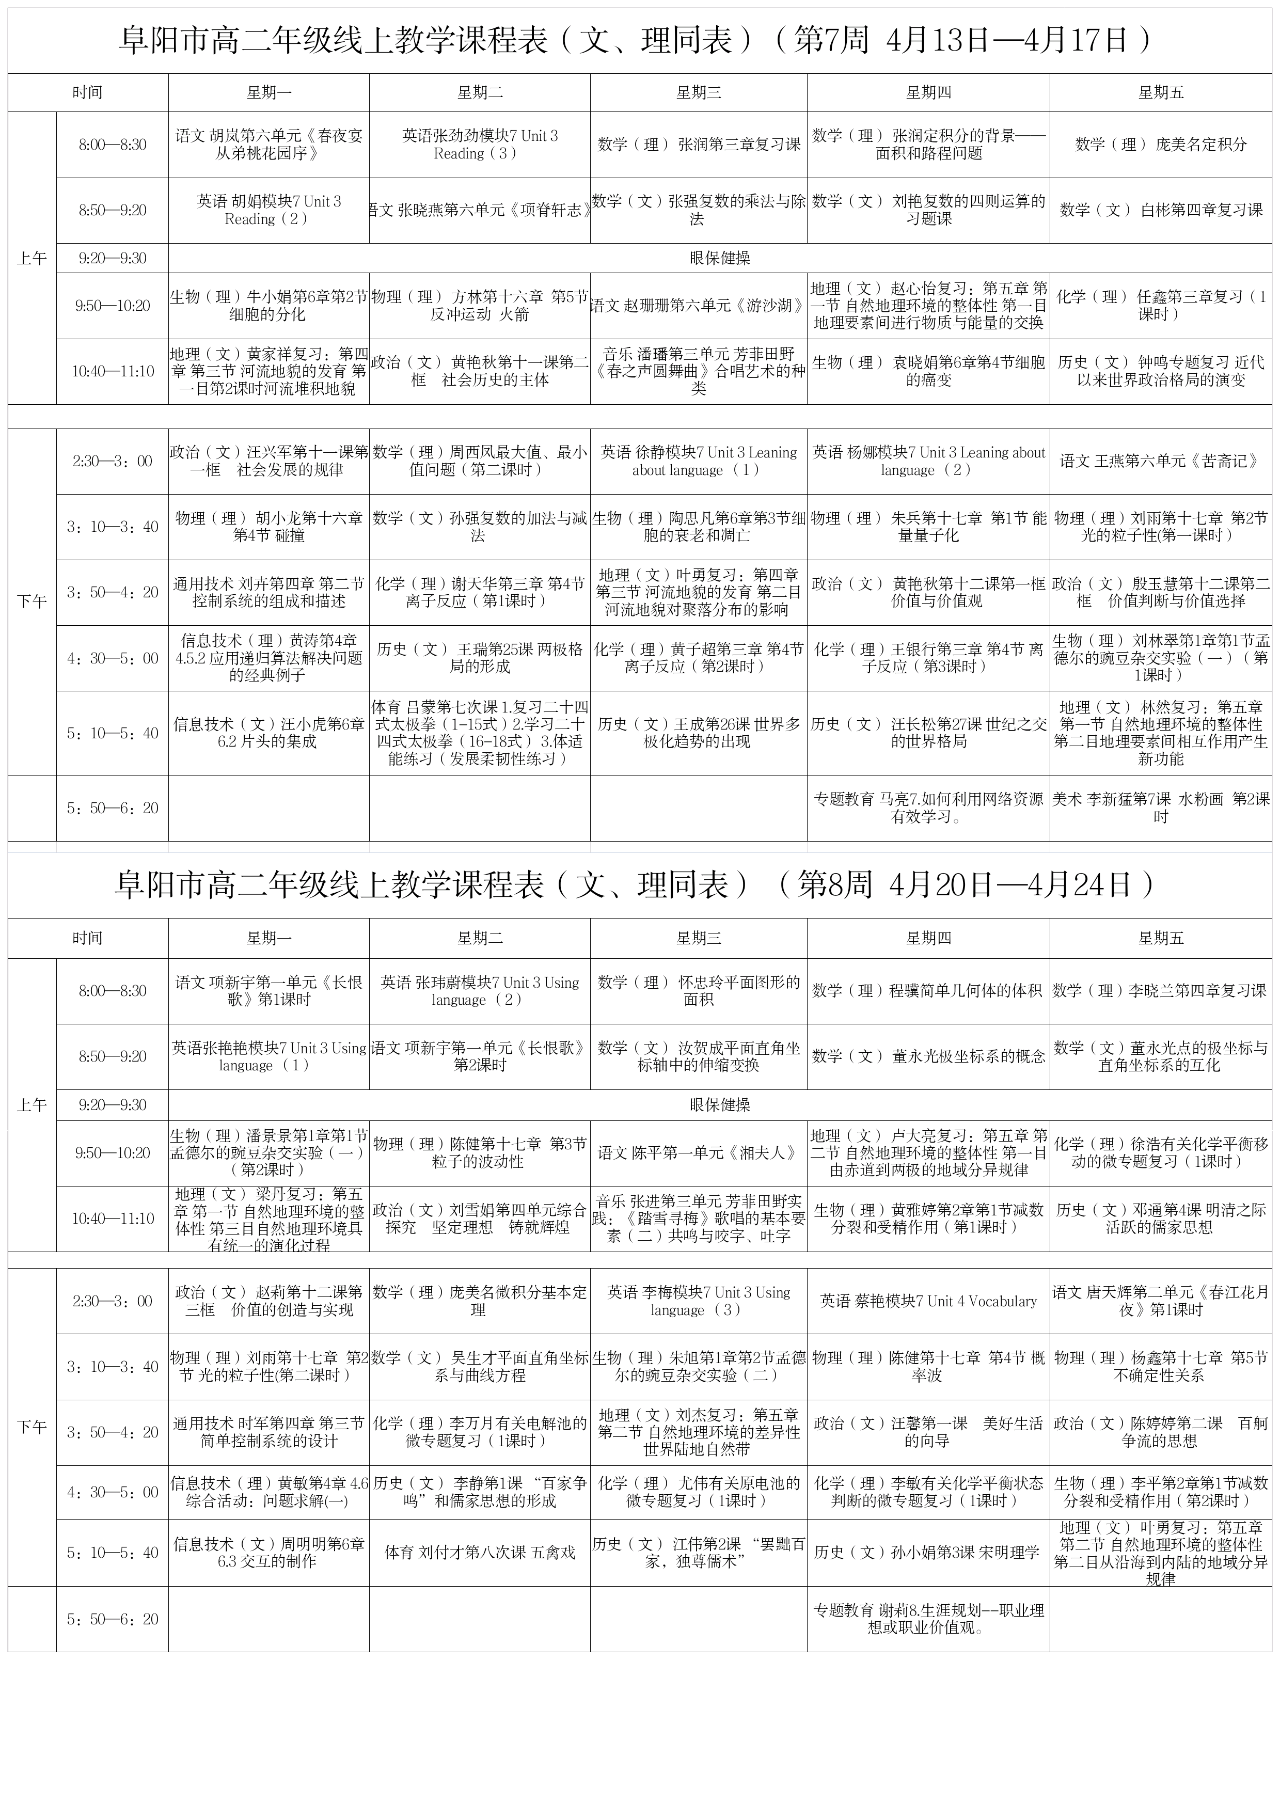 安徽阜阳中小学“空中课堂”课程表完整版公布（4月13日9